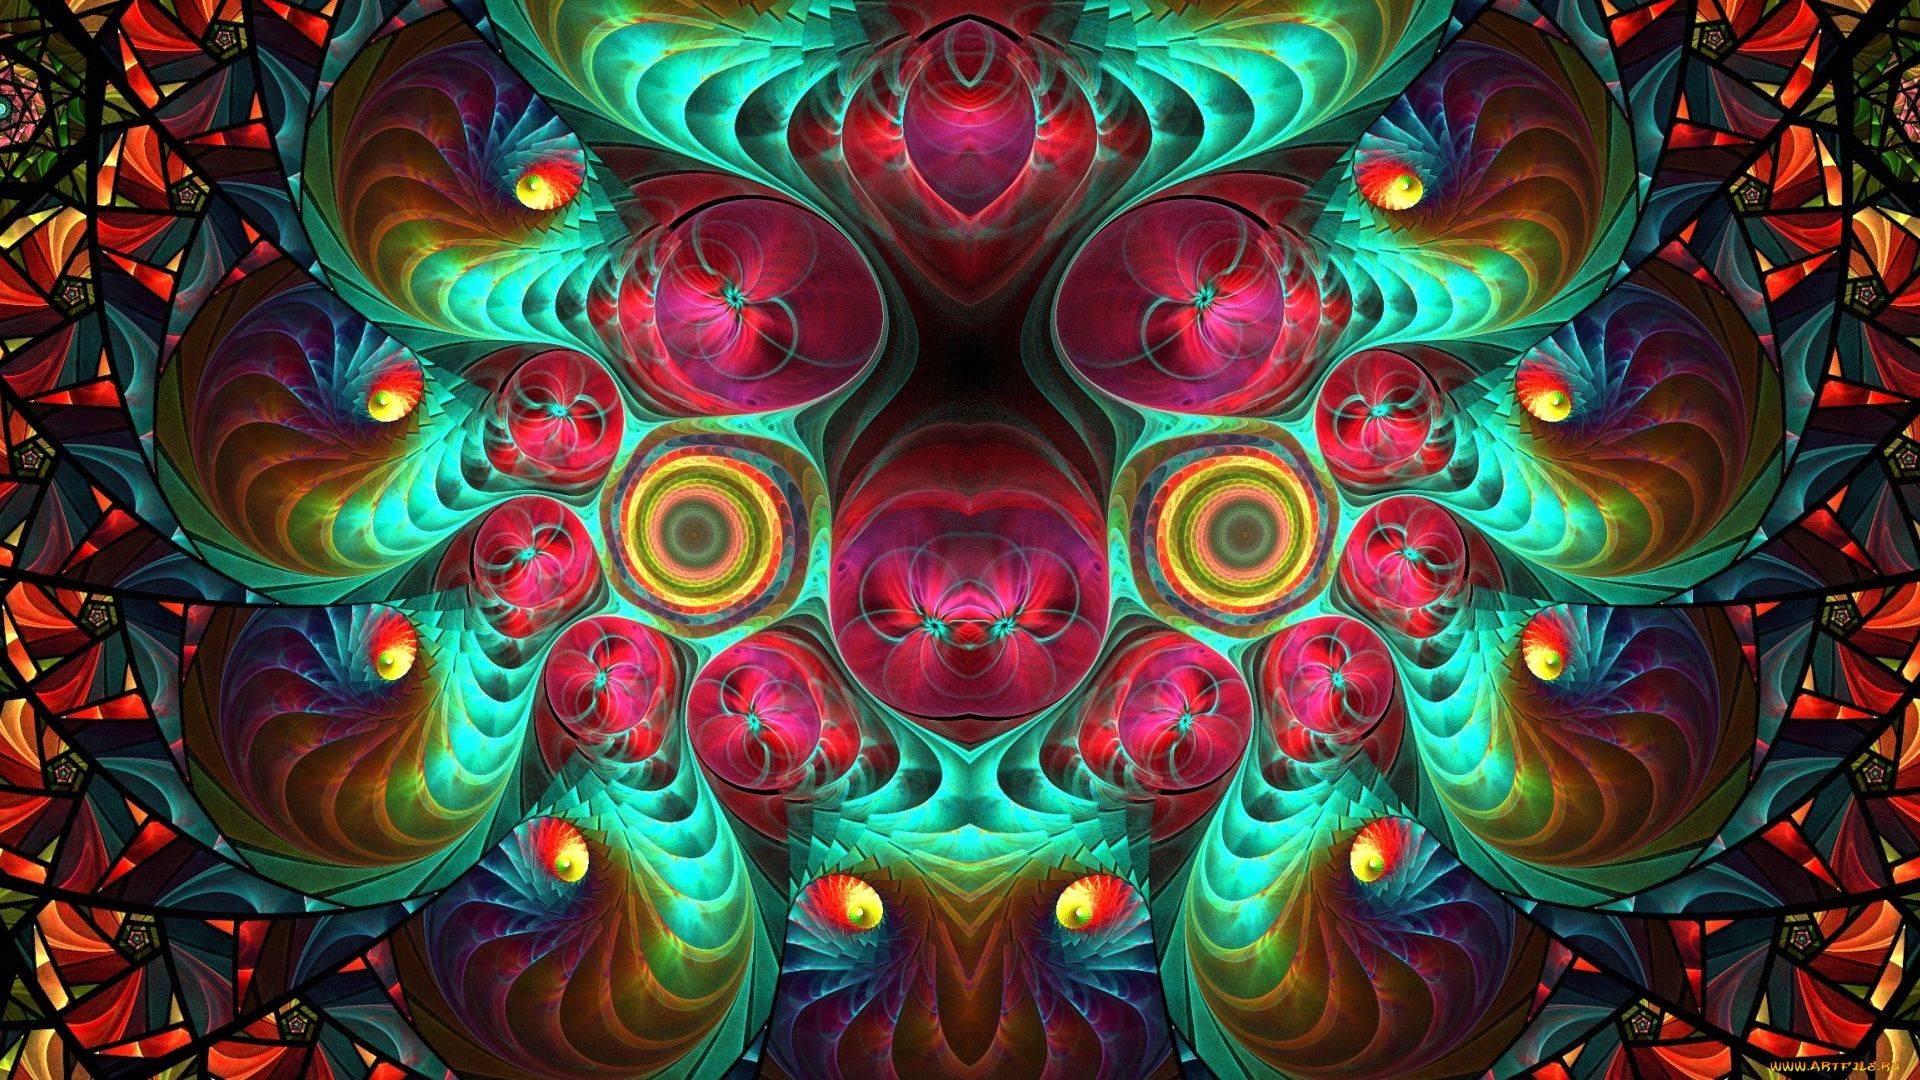 Kaleidoscope Image